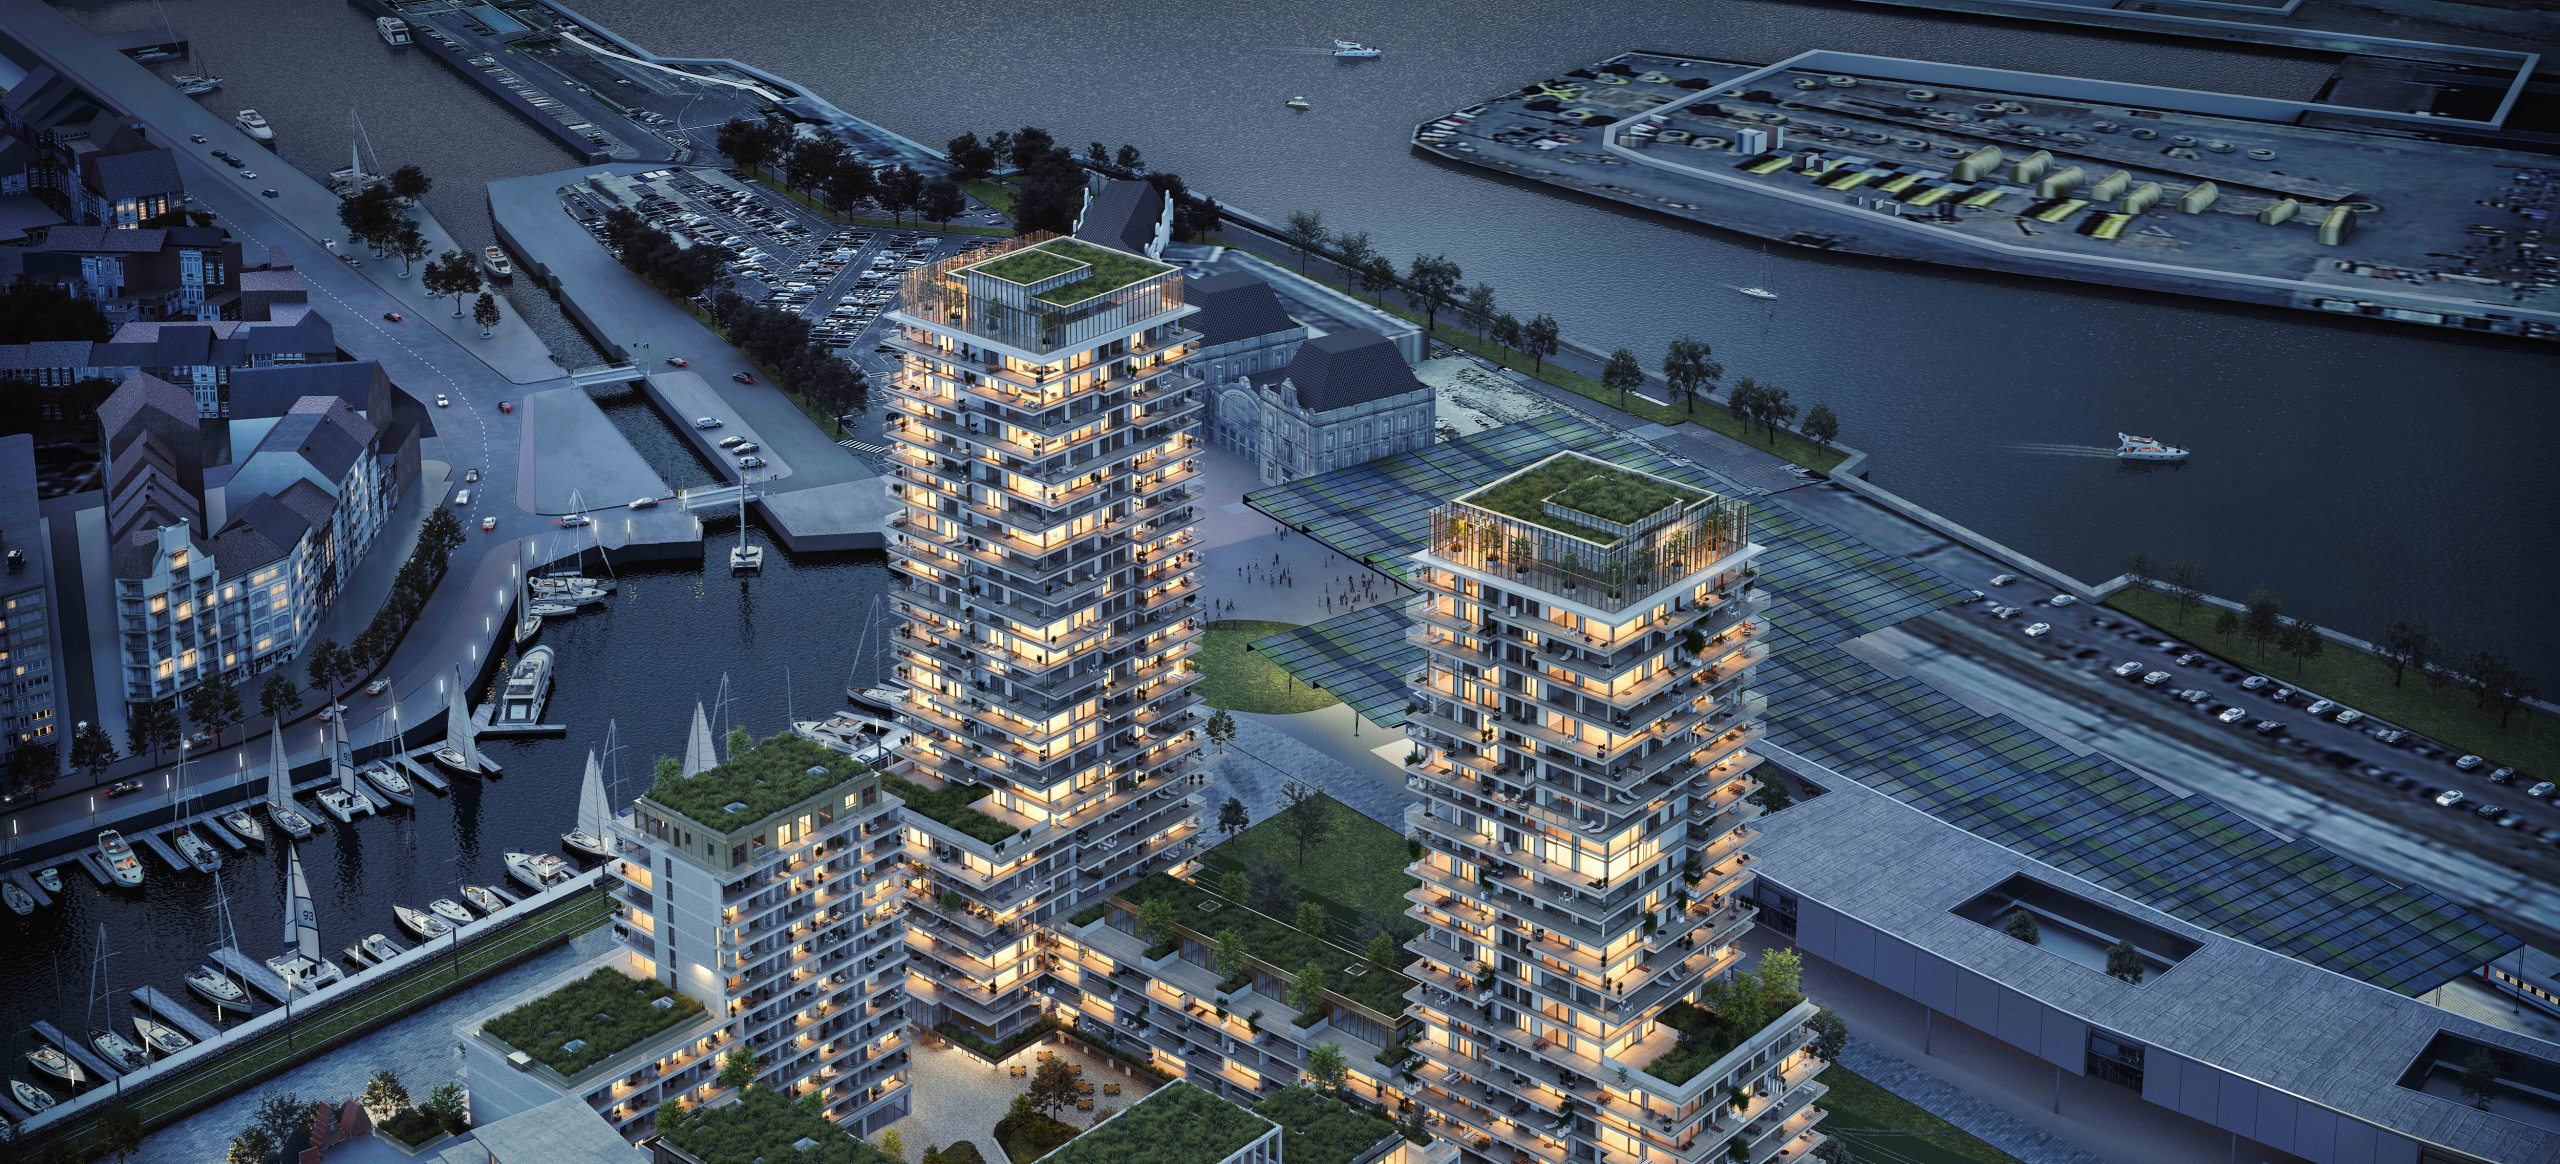 Wij investeren - SKY Towers Oostende